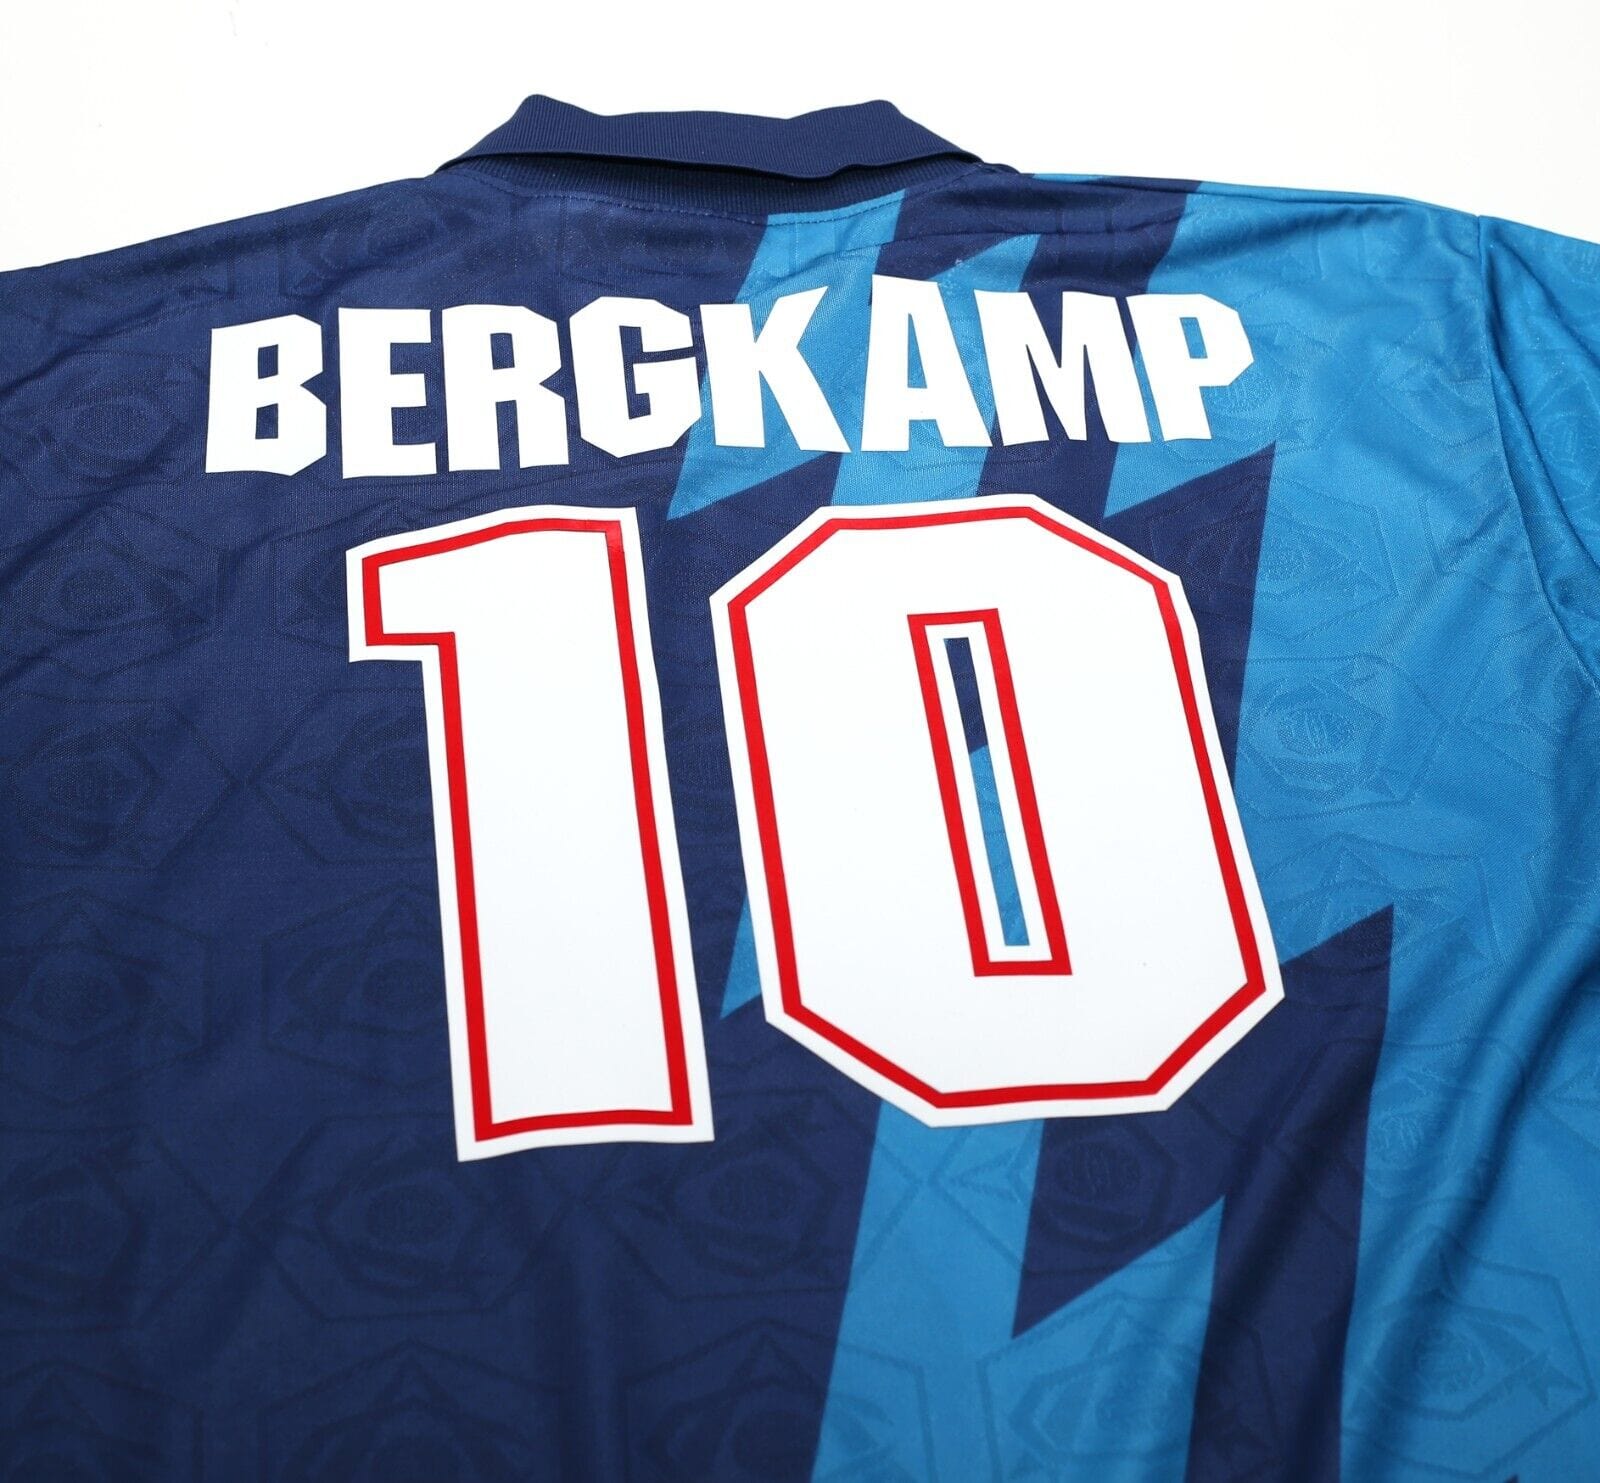 1995/96 BERGKAMP #10 Arsenal Vintage Nike Away Football Shirt Jersey (L/XL)